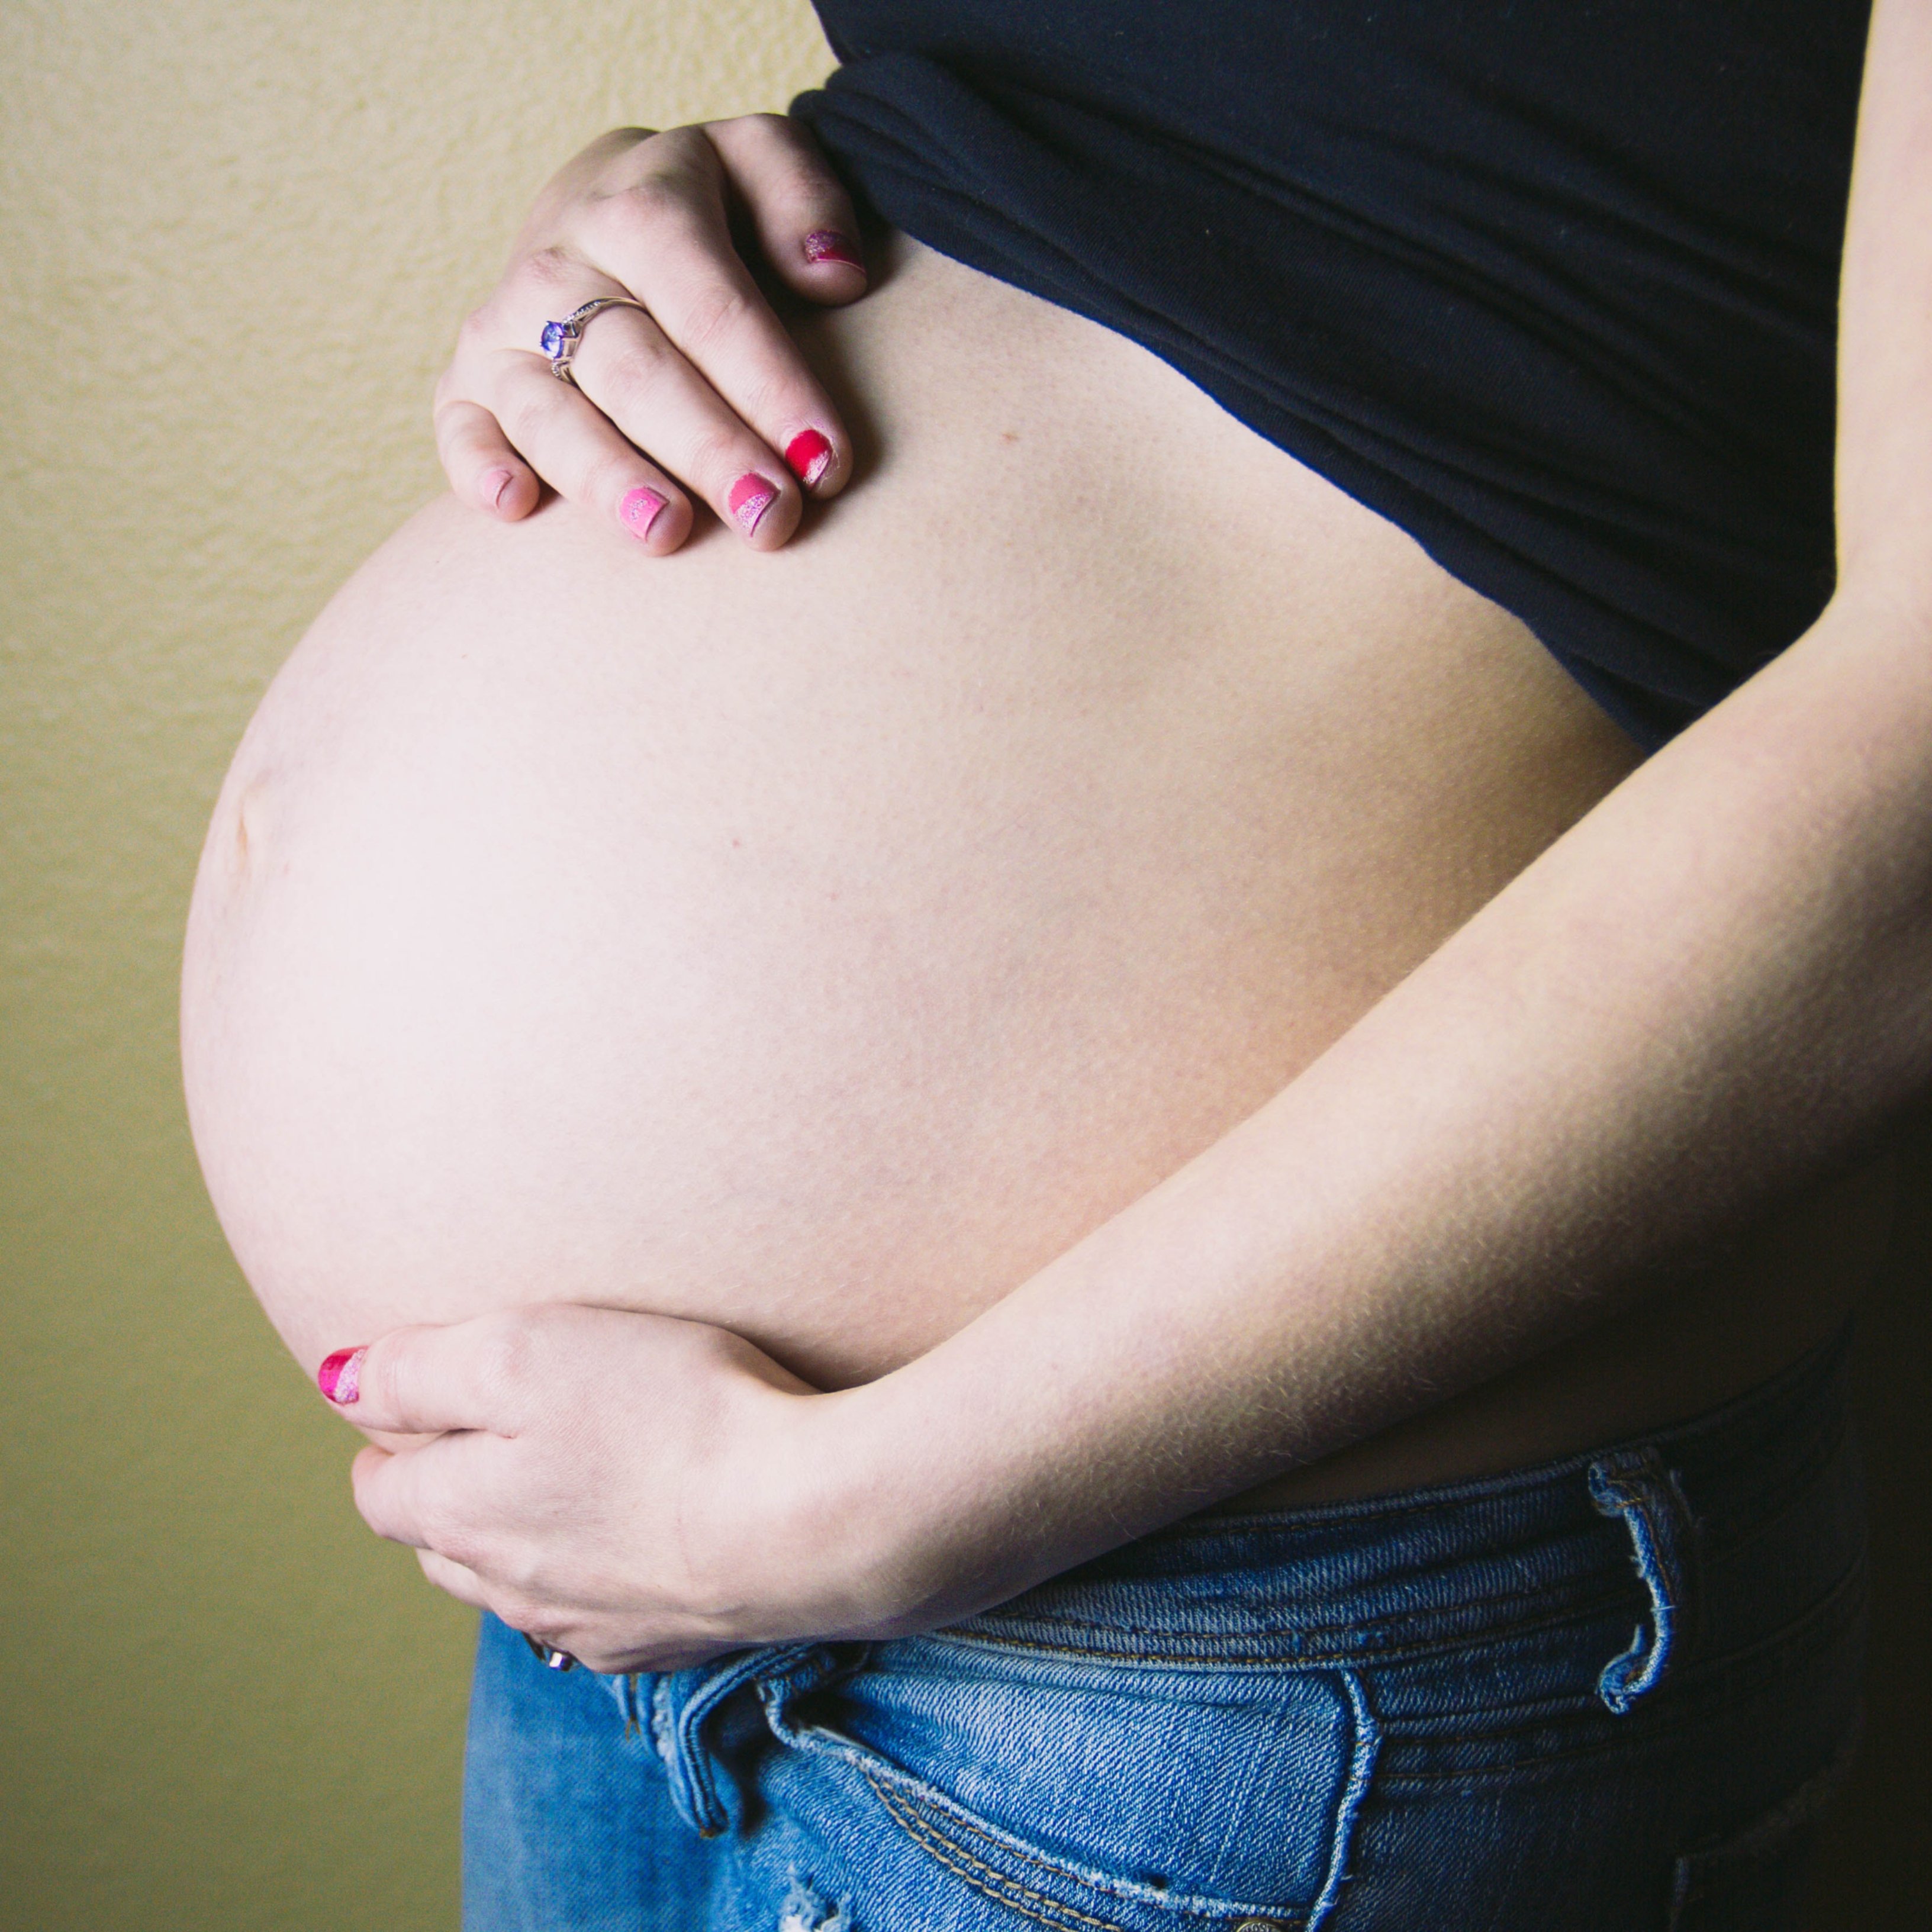 Els especialistes se sorprenen de tot l'estrès que pateixen les embarassades